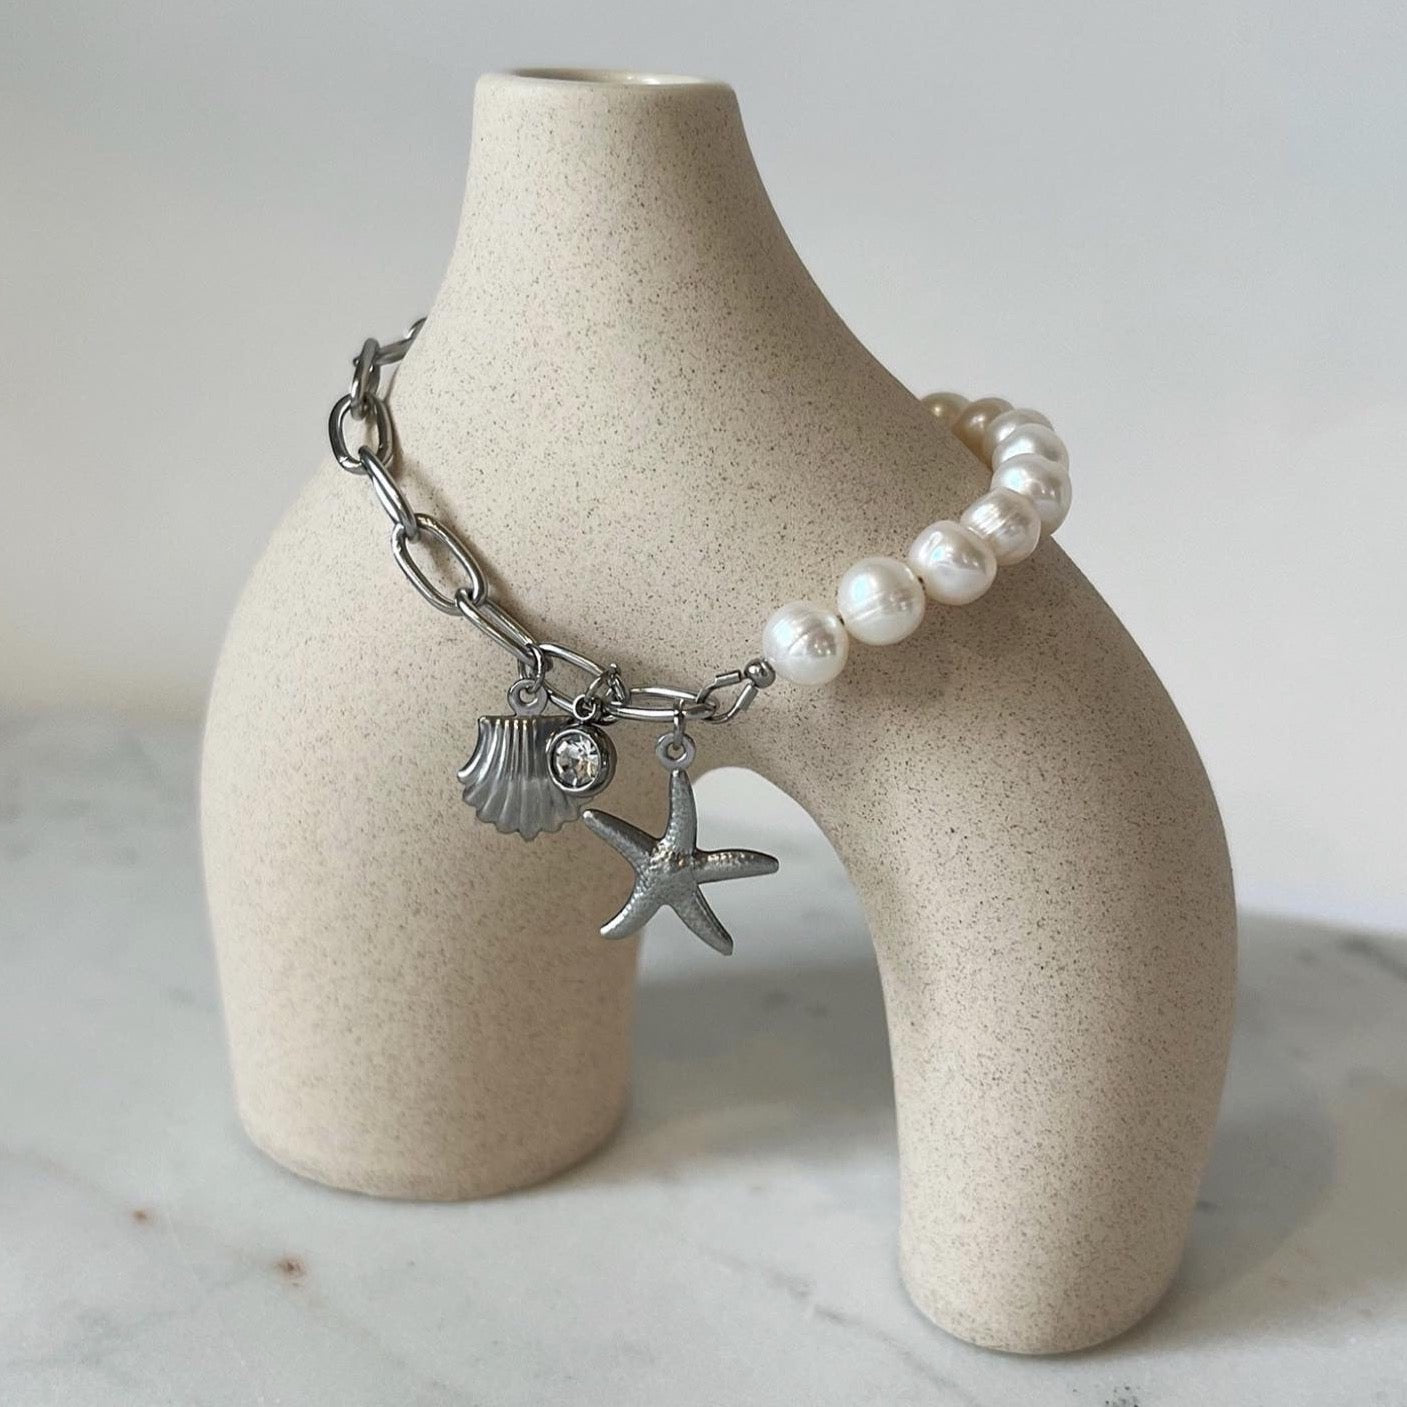 Bracelet Simples Perles - Argent